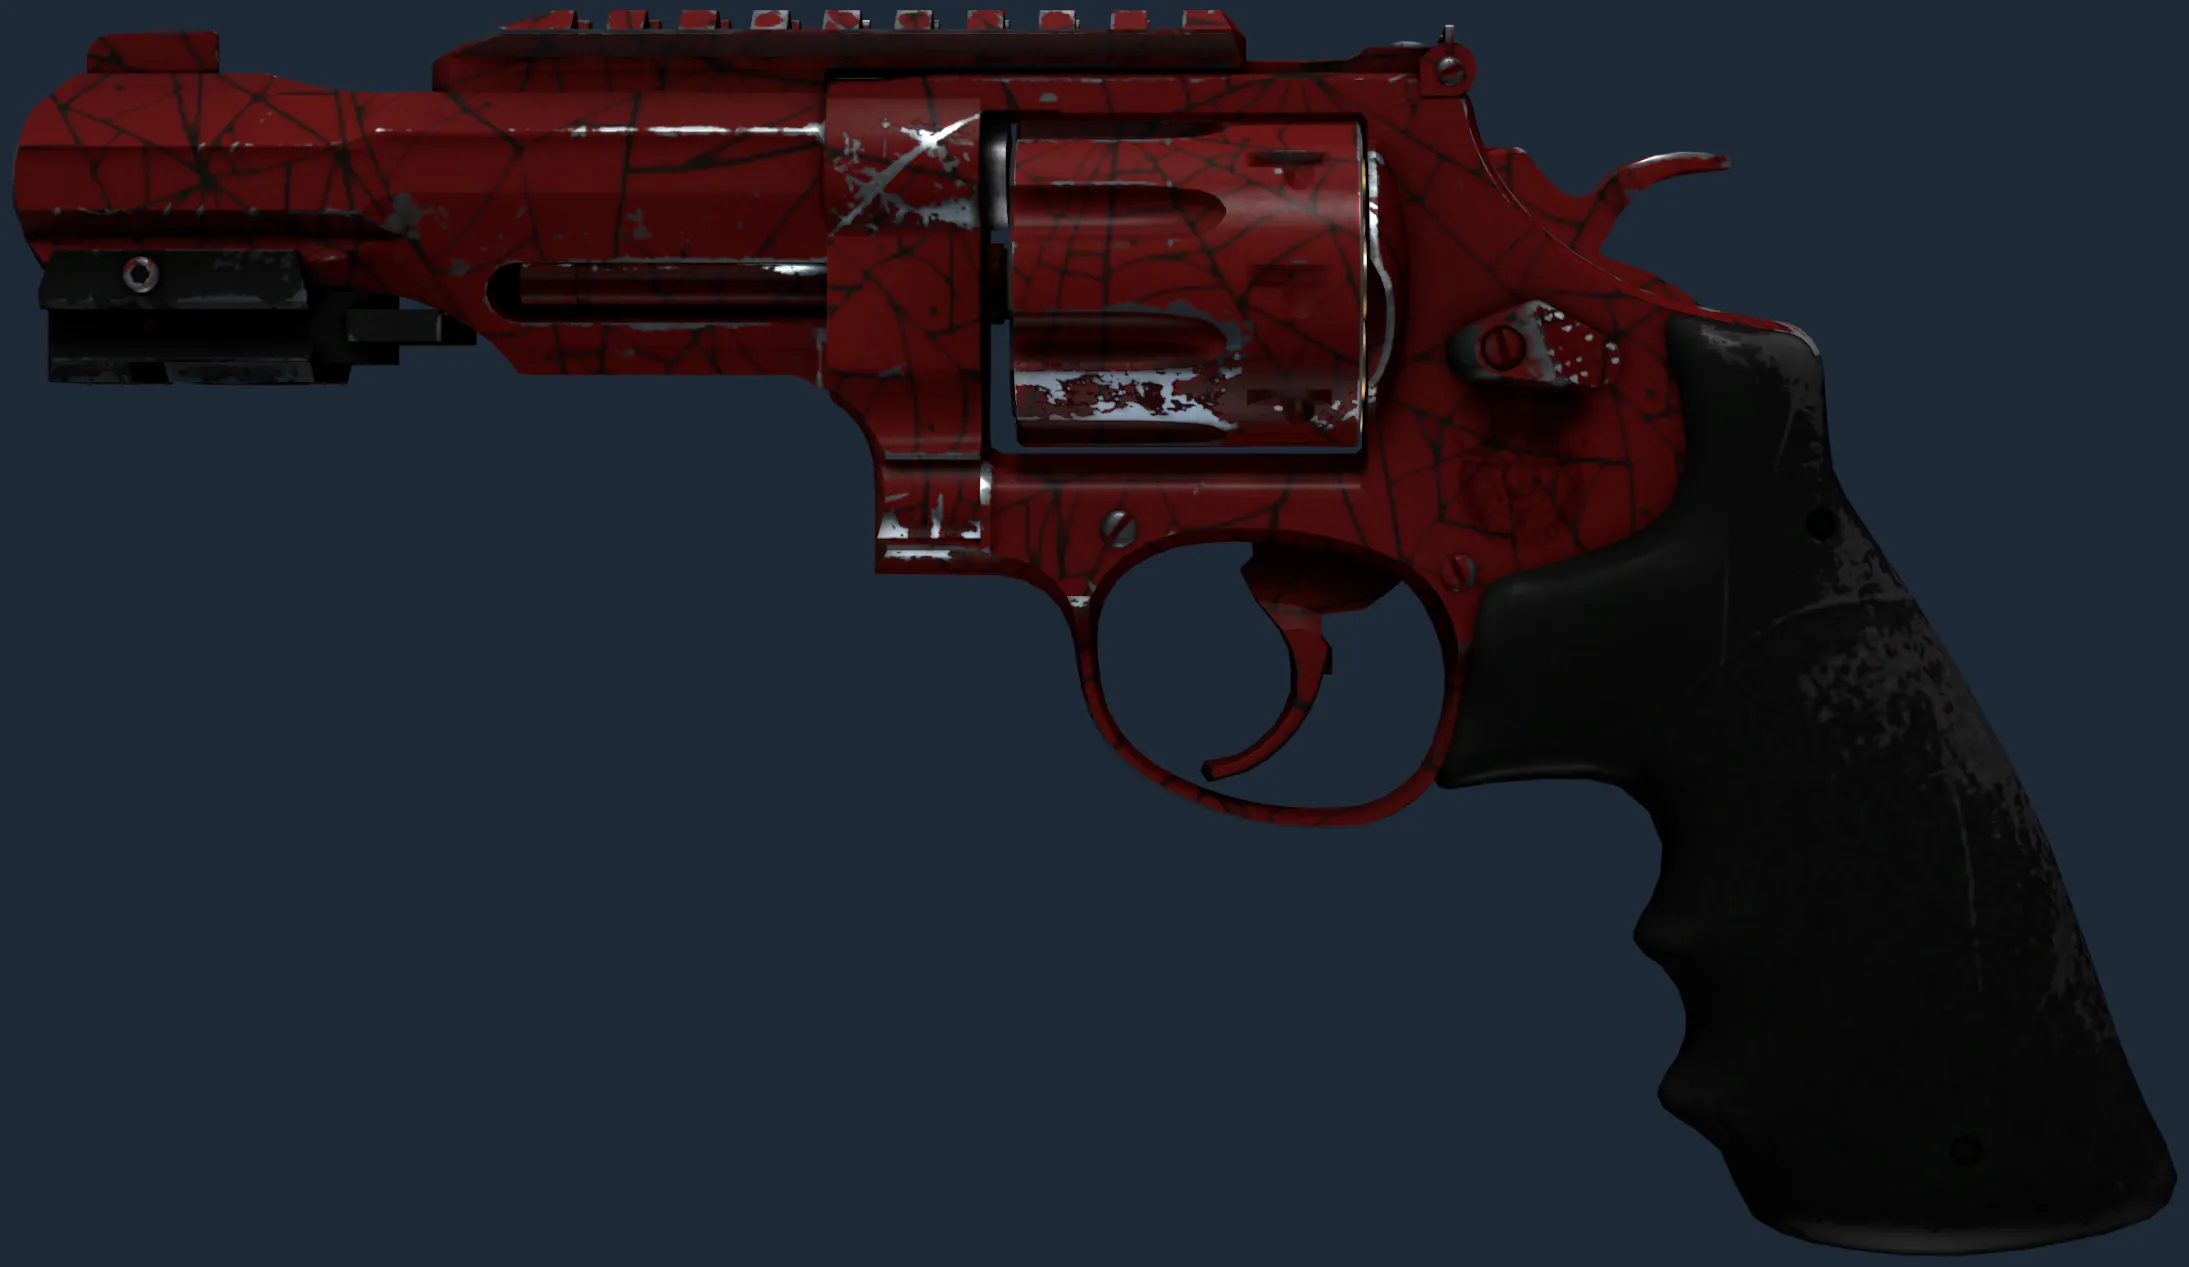 R8 Revolver | Crimson Web (Field-Tested)